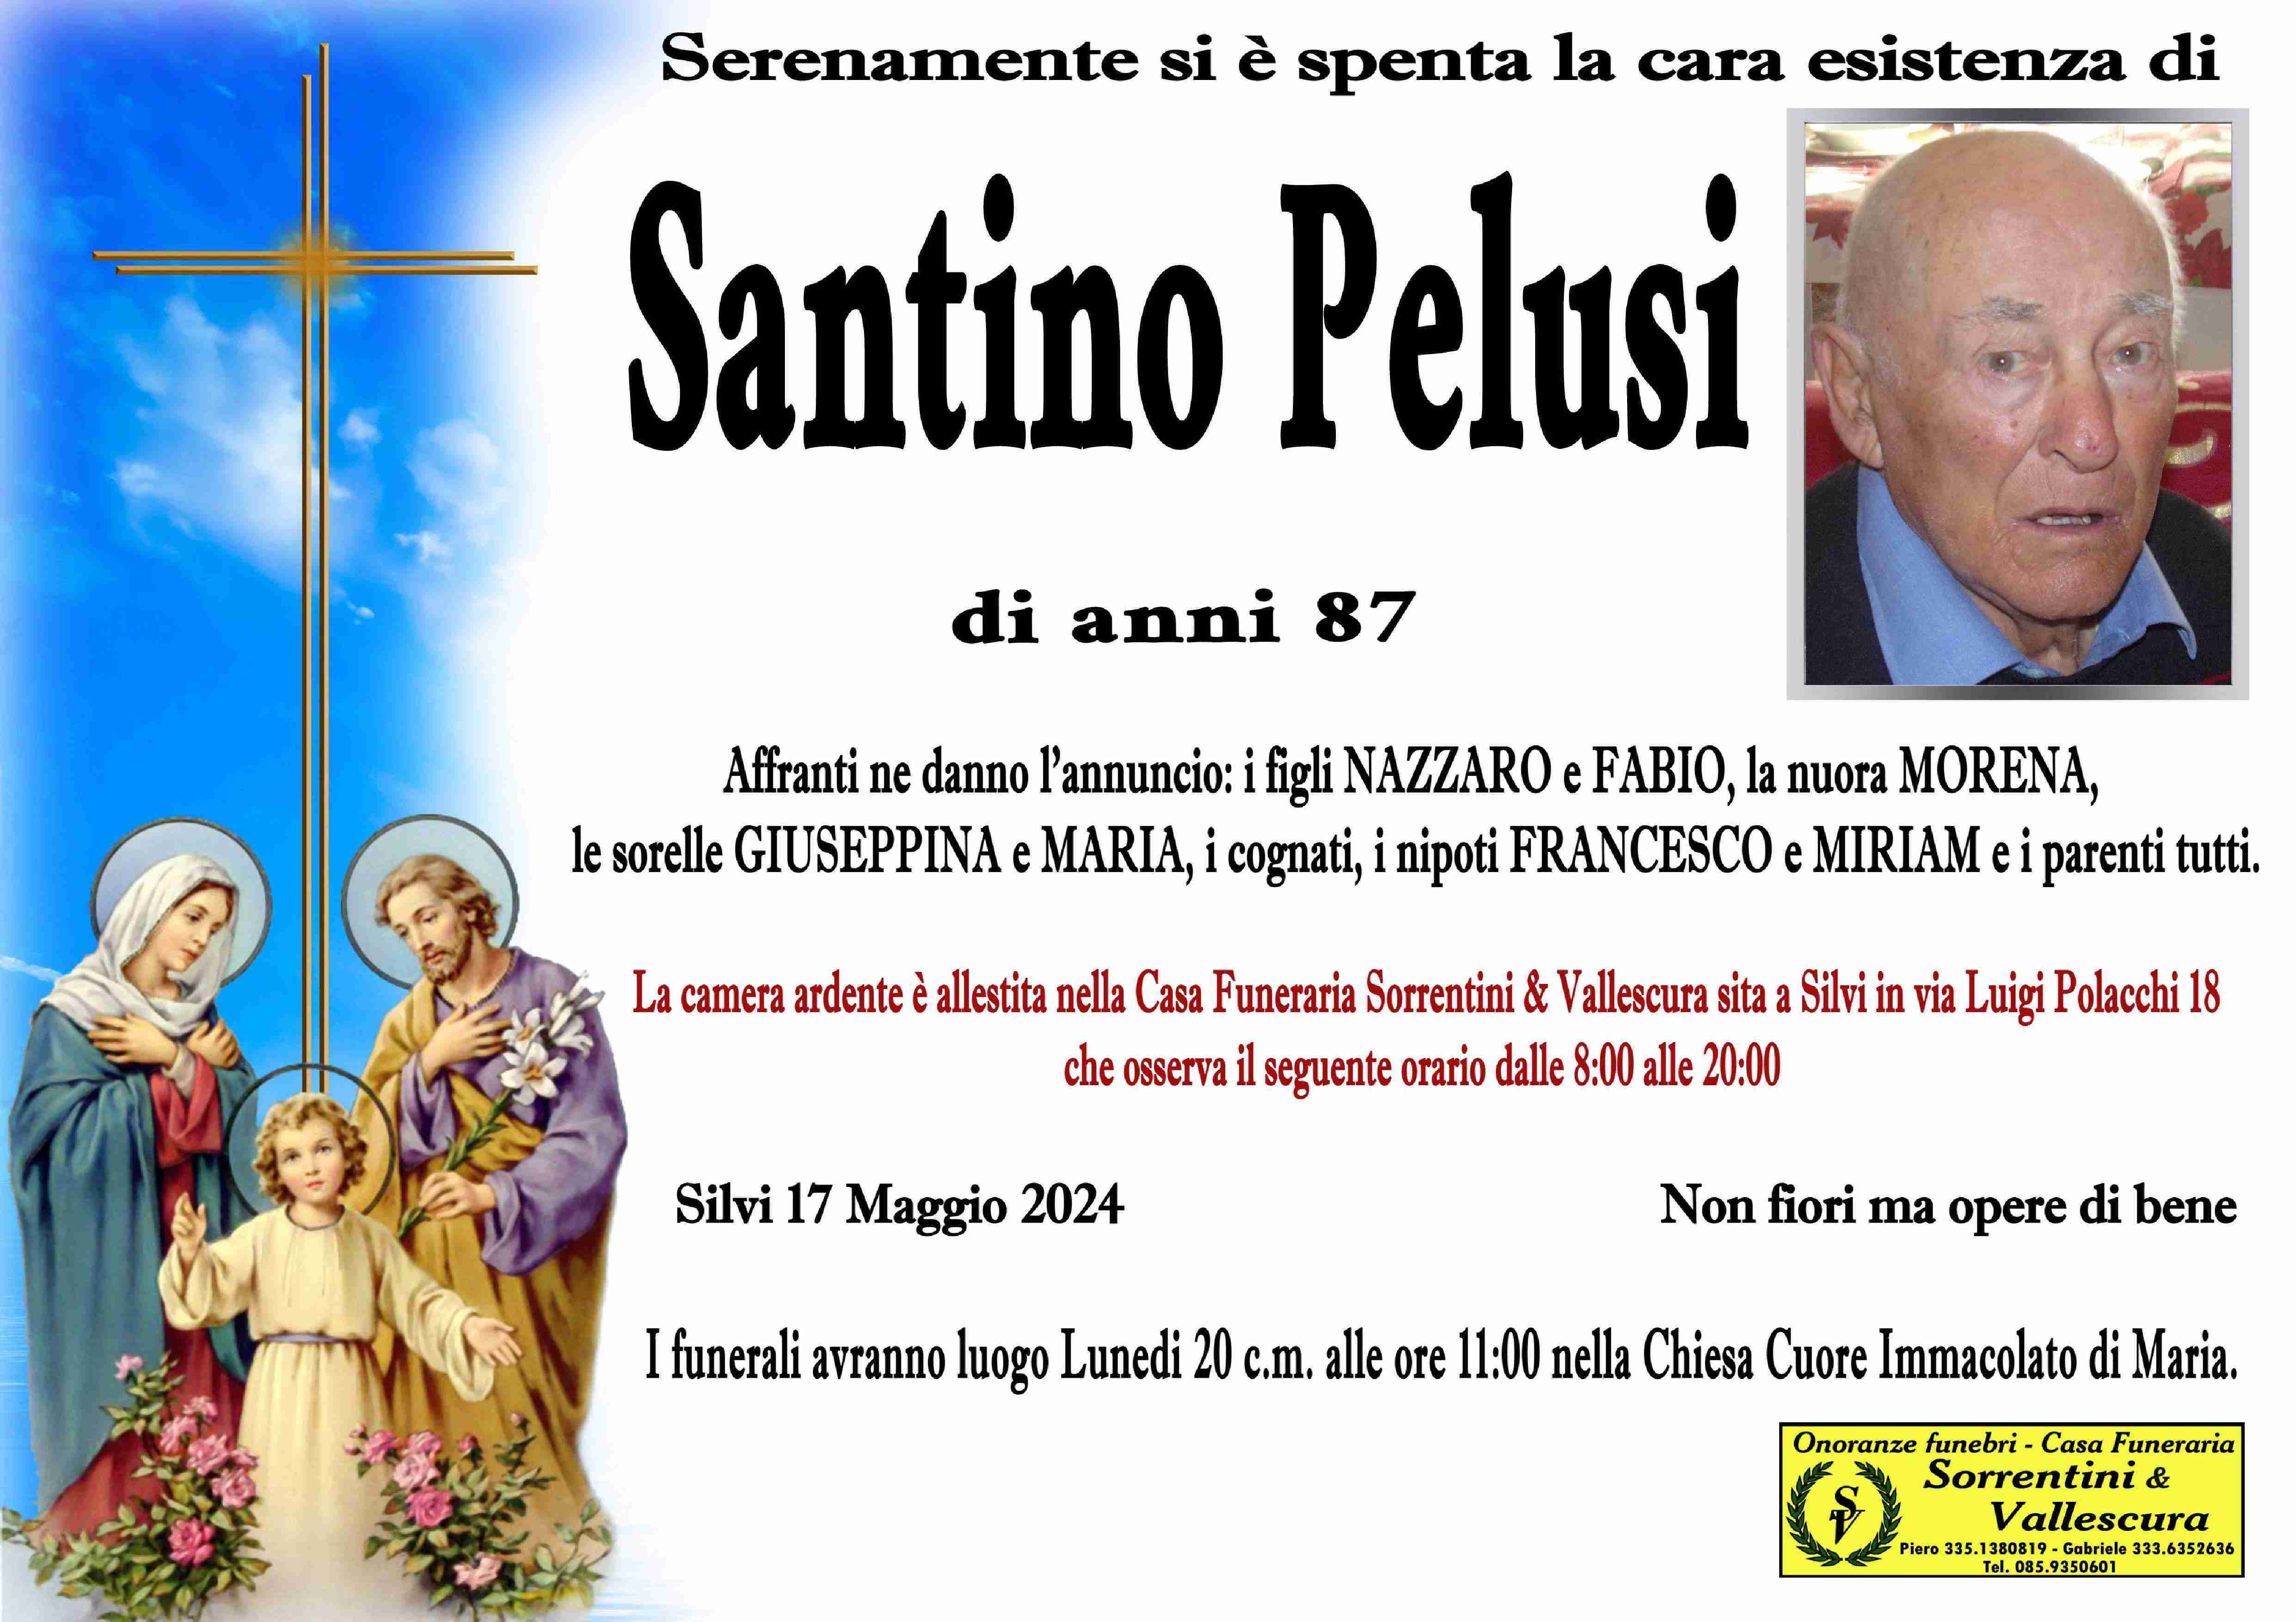 Santino Pelusi